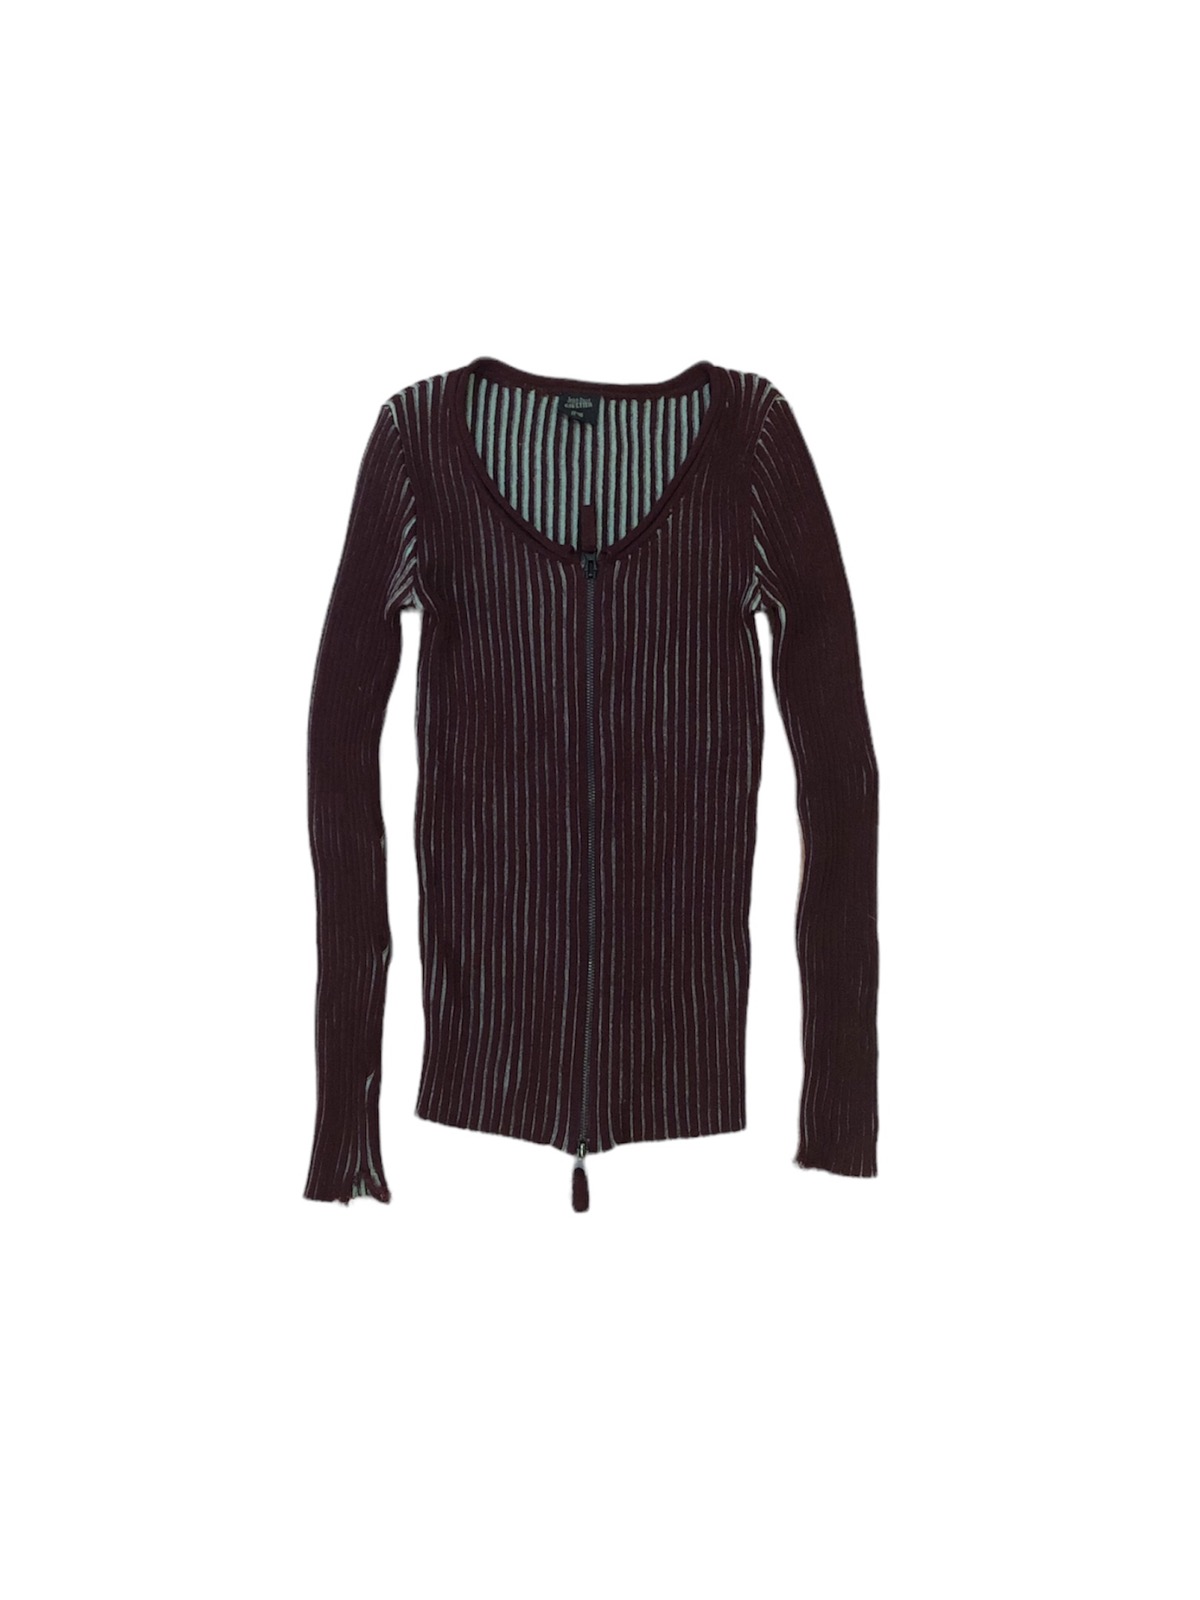 Jean paul gaultier zipper knit - 1